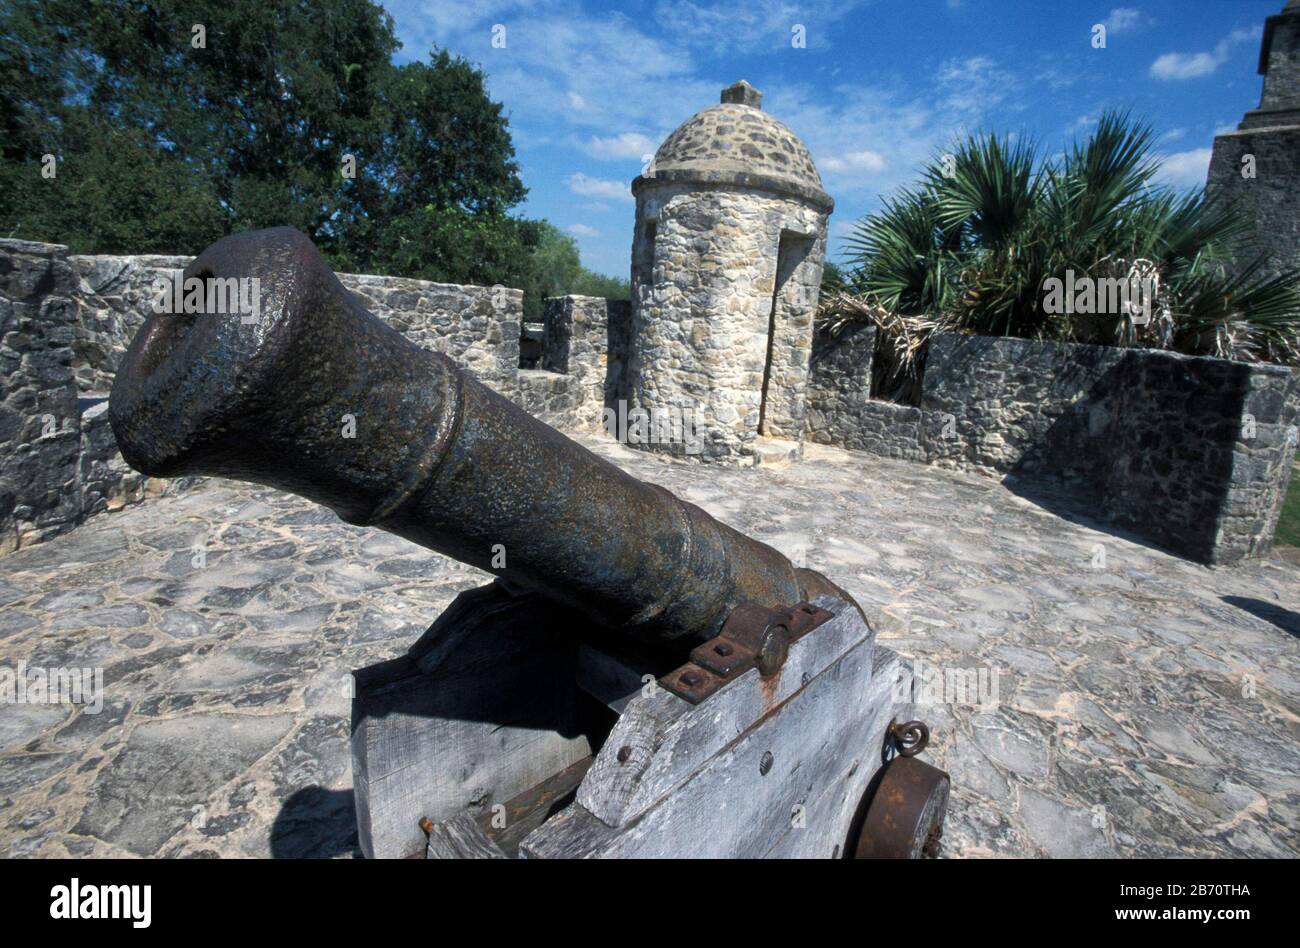 Goliad Texas USA: Presidio la Bahia, eine Festung, die 1749 von der spanischen Armee erbaut wurde. Es ist am bekanntesten als Ort der Schlacht von Goliad im Jahr 1835 während des Kampfes der Texaner um die Unabhängigkeit von Mexiko. ©Bob Daemmrich Stockfoto